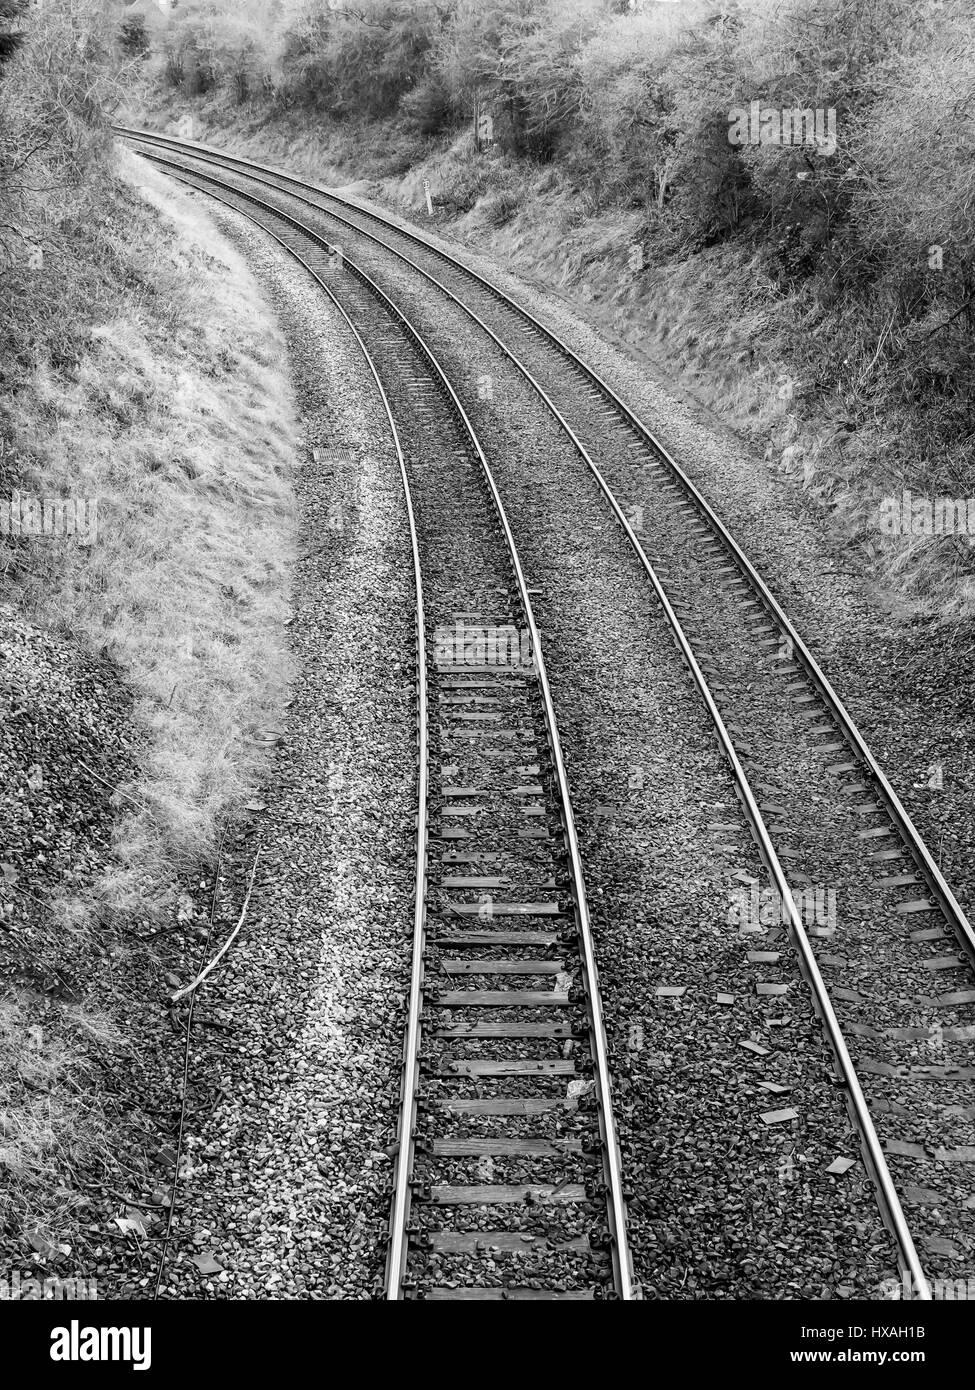 Zwei normalspurigen Eisenbahnstrecken auf einer Kurve in eine Beschneidung gerendert in schwarz / weiß Stockfoto